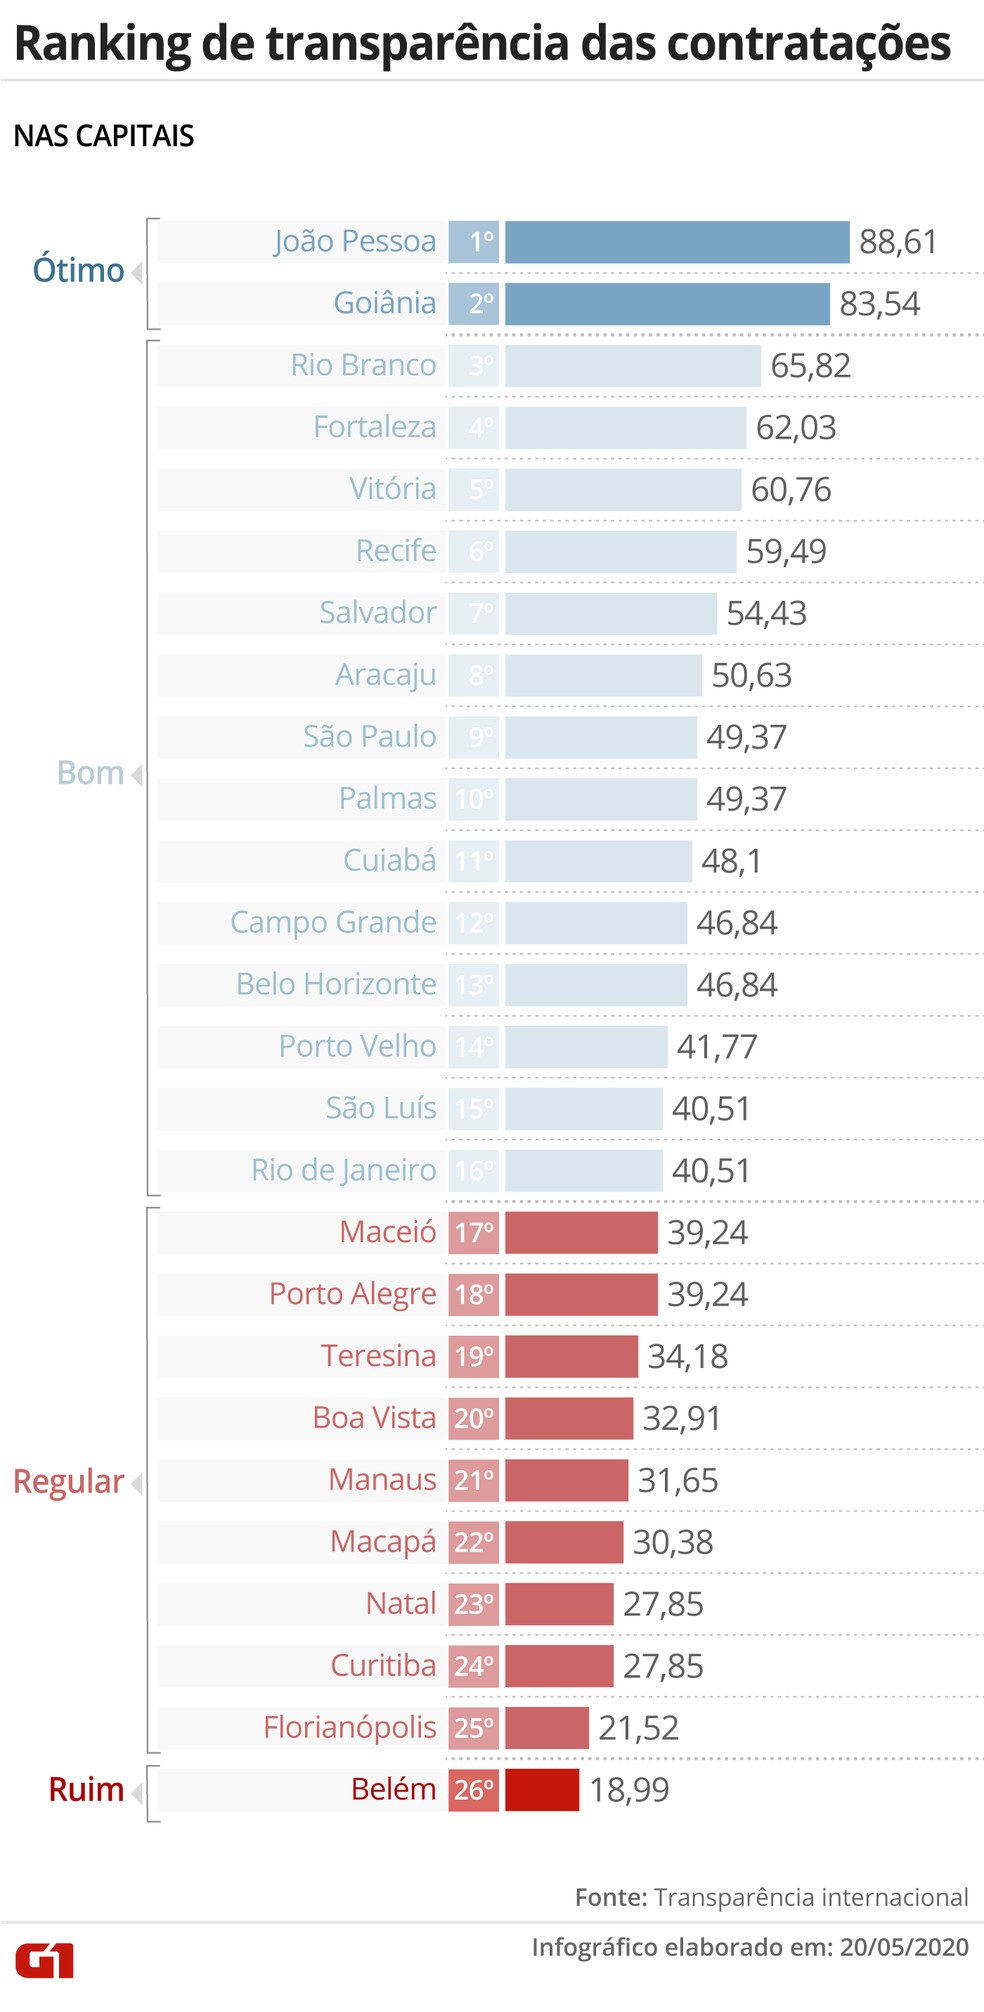 Ranking de transparência das prefeituras das capitais nas contratações emergenciais durante a pandemia da Covid-19 feito pela Transparência Internacional — Foto: Aparecido Gonçalves/G1